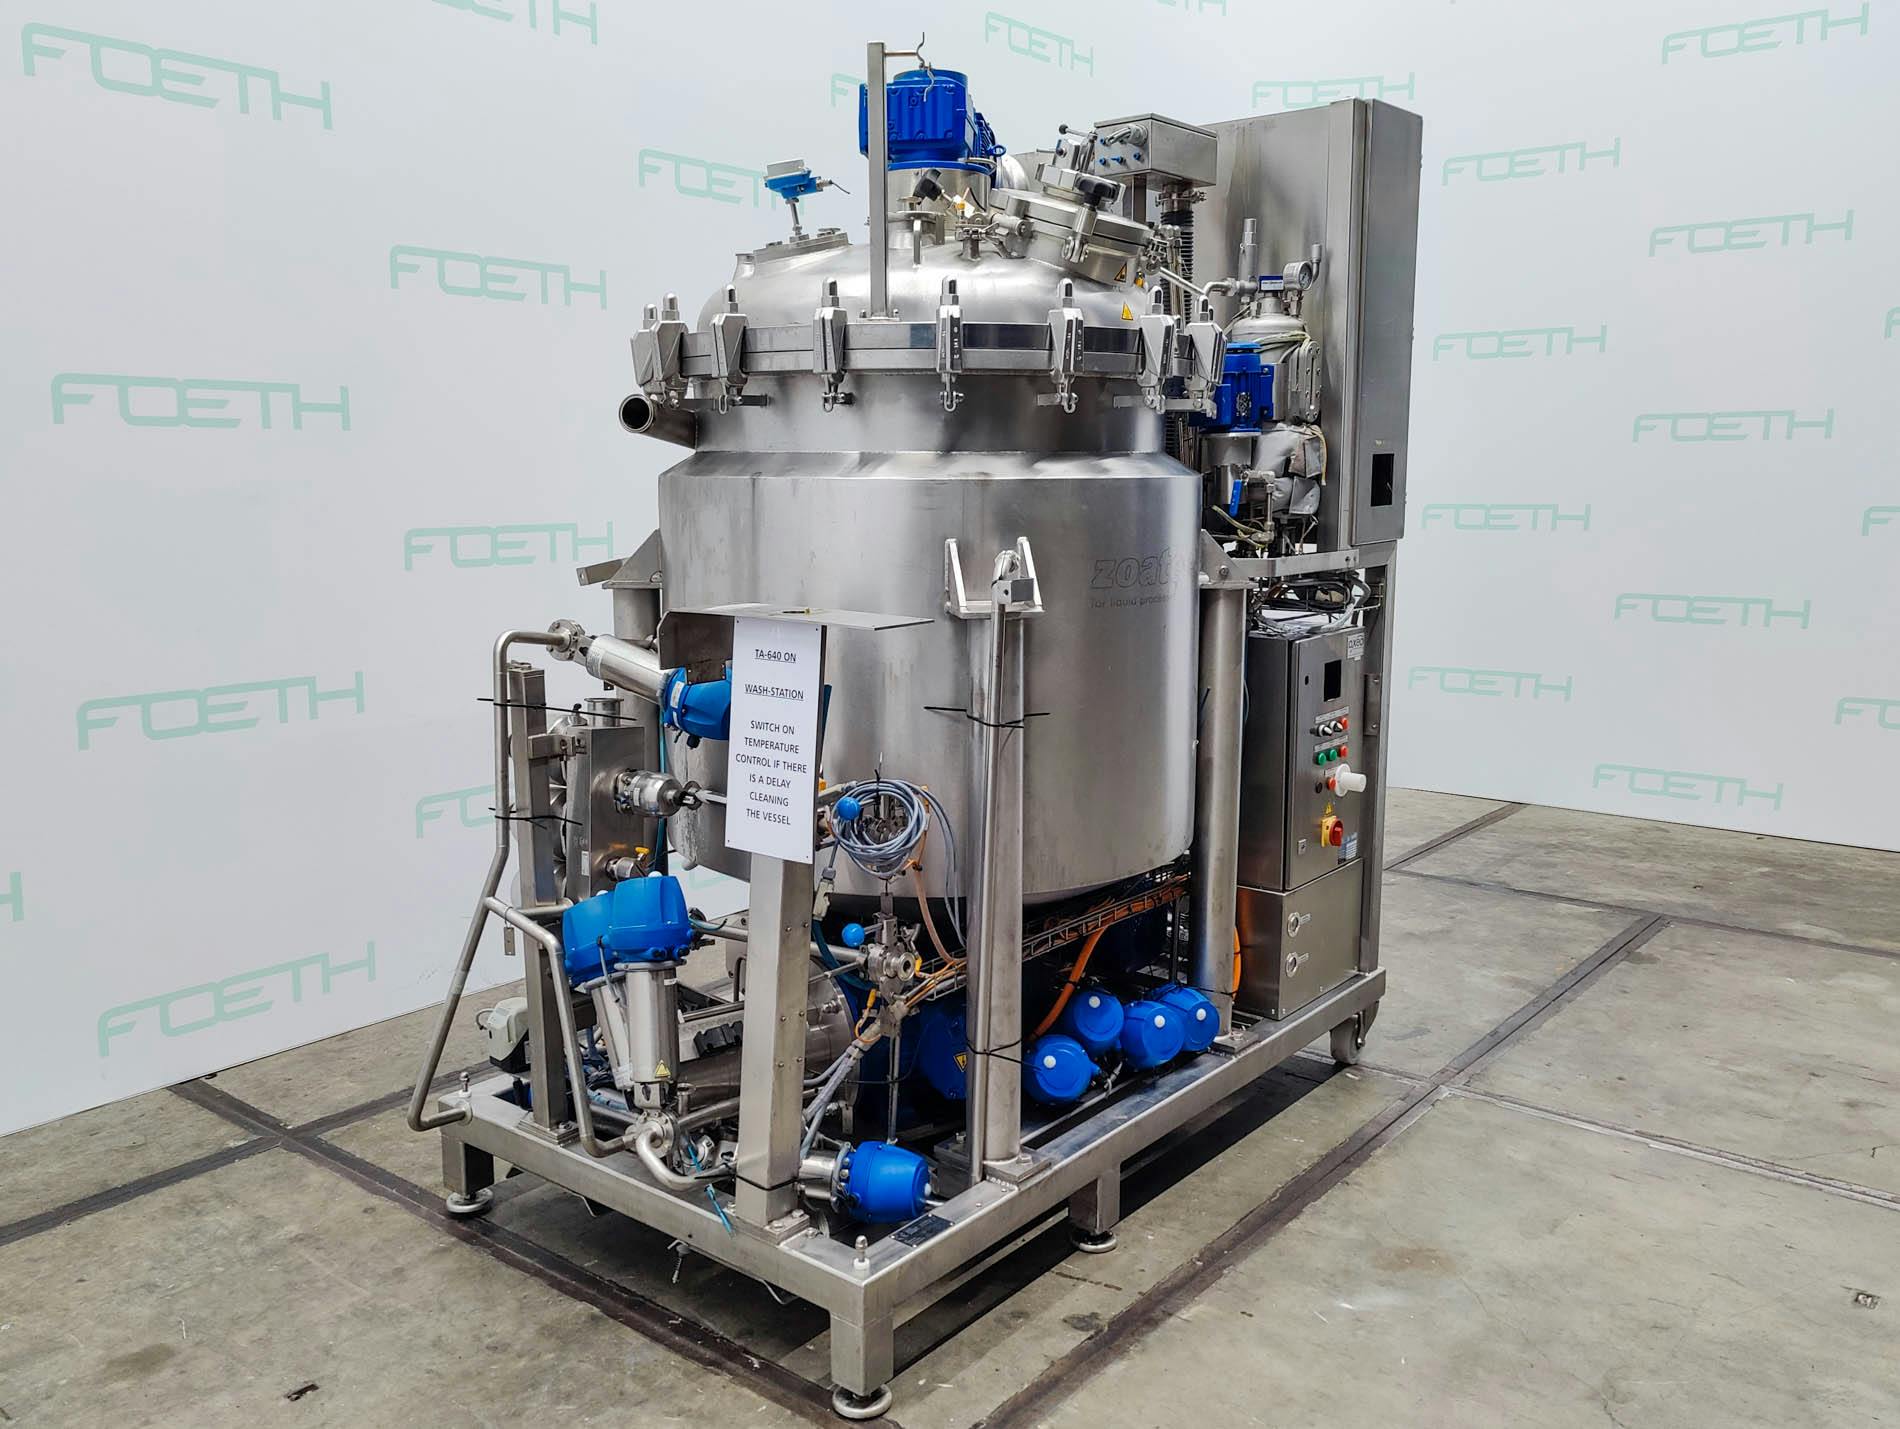 Zoatec Prozessbehaelter 600 - 600 Ltr. (AZO Liquids) - Processing vessel - image 2